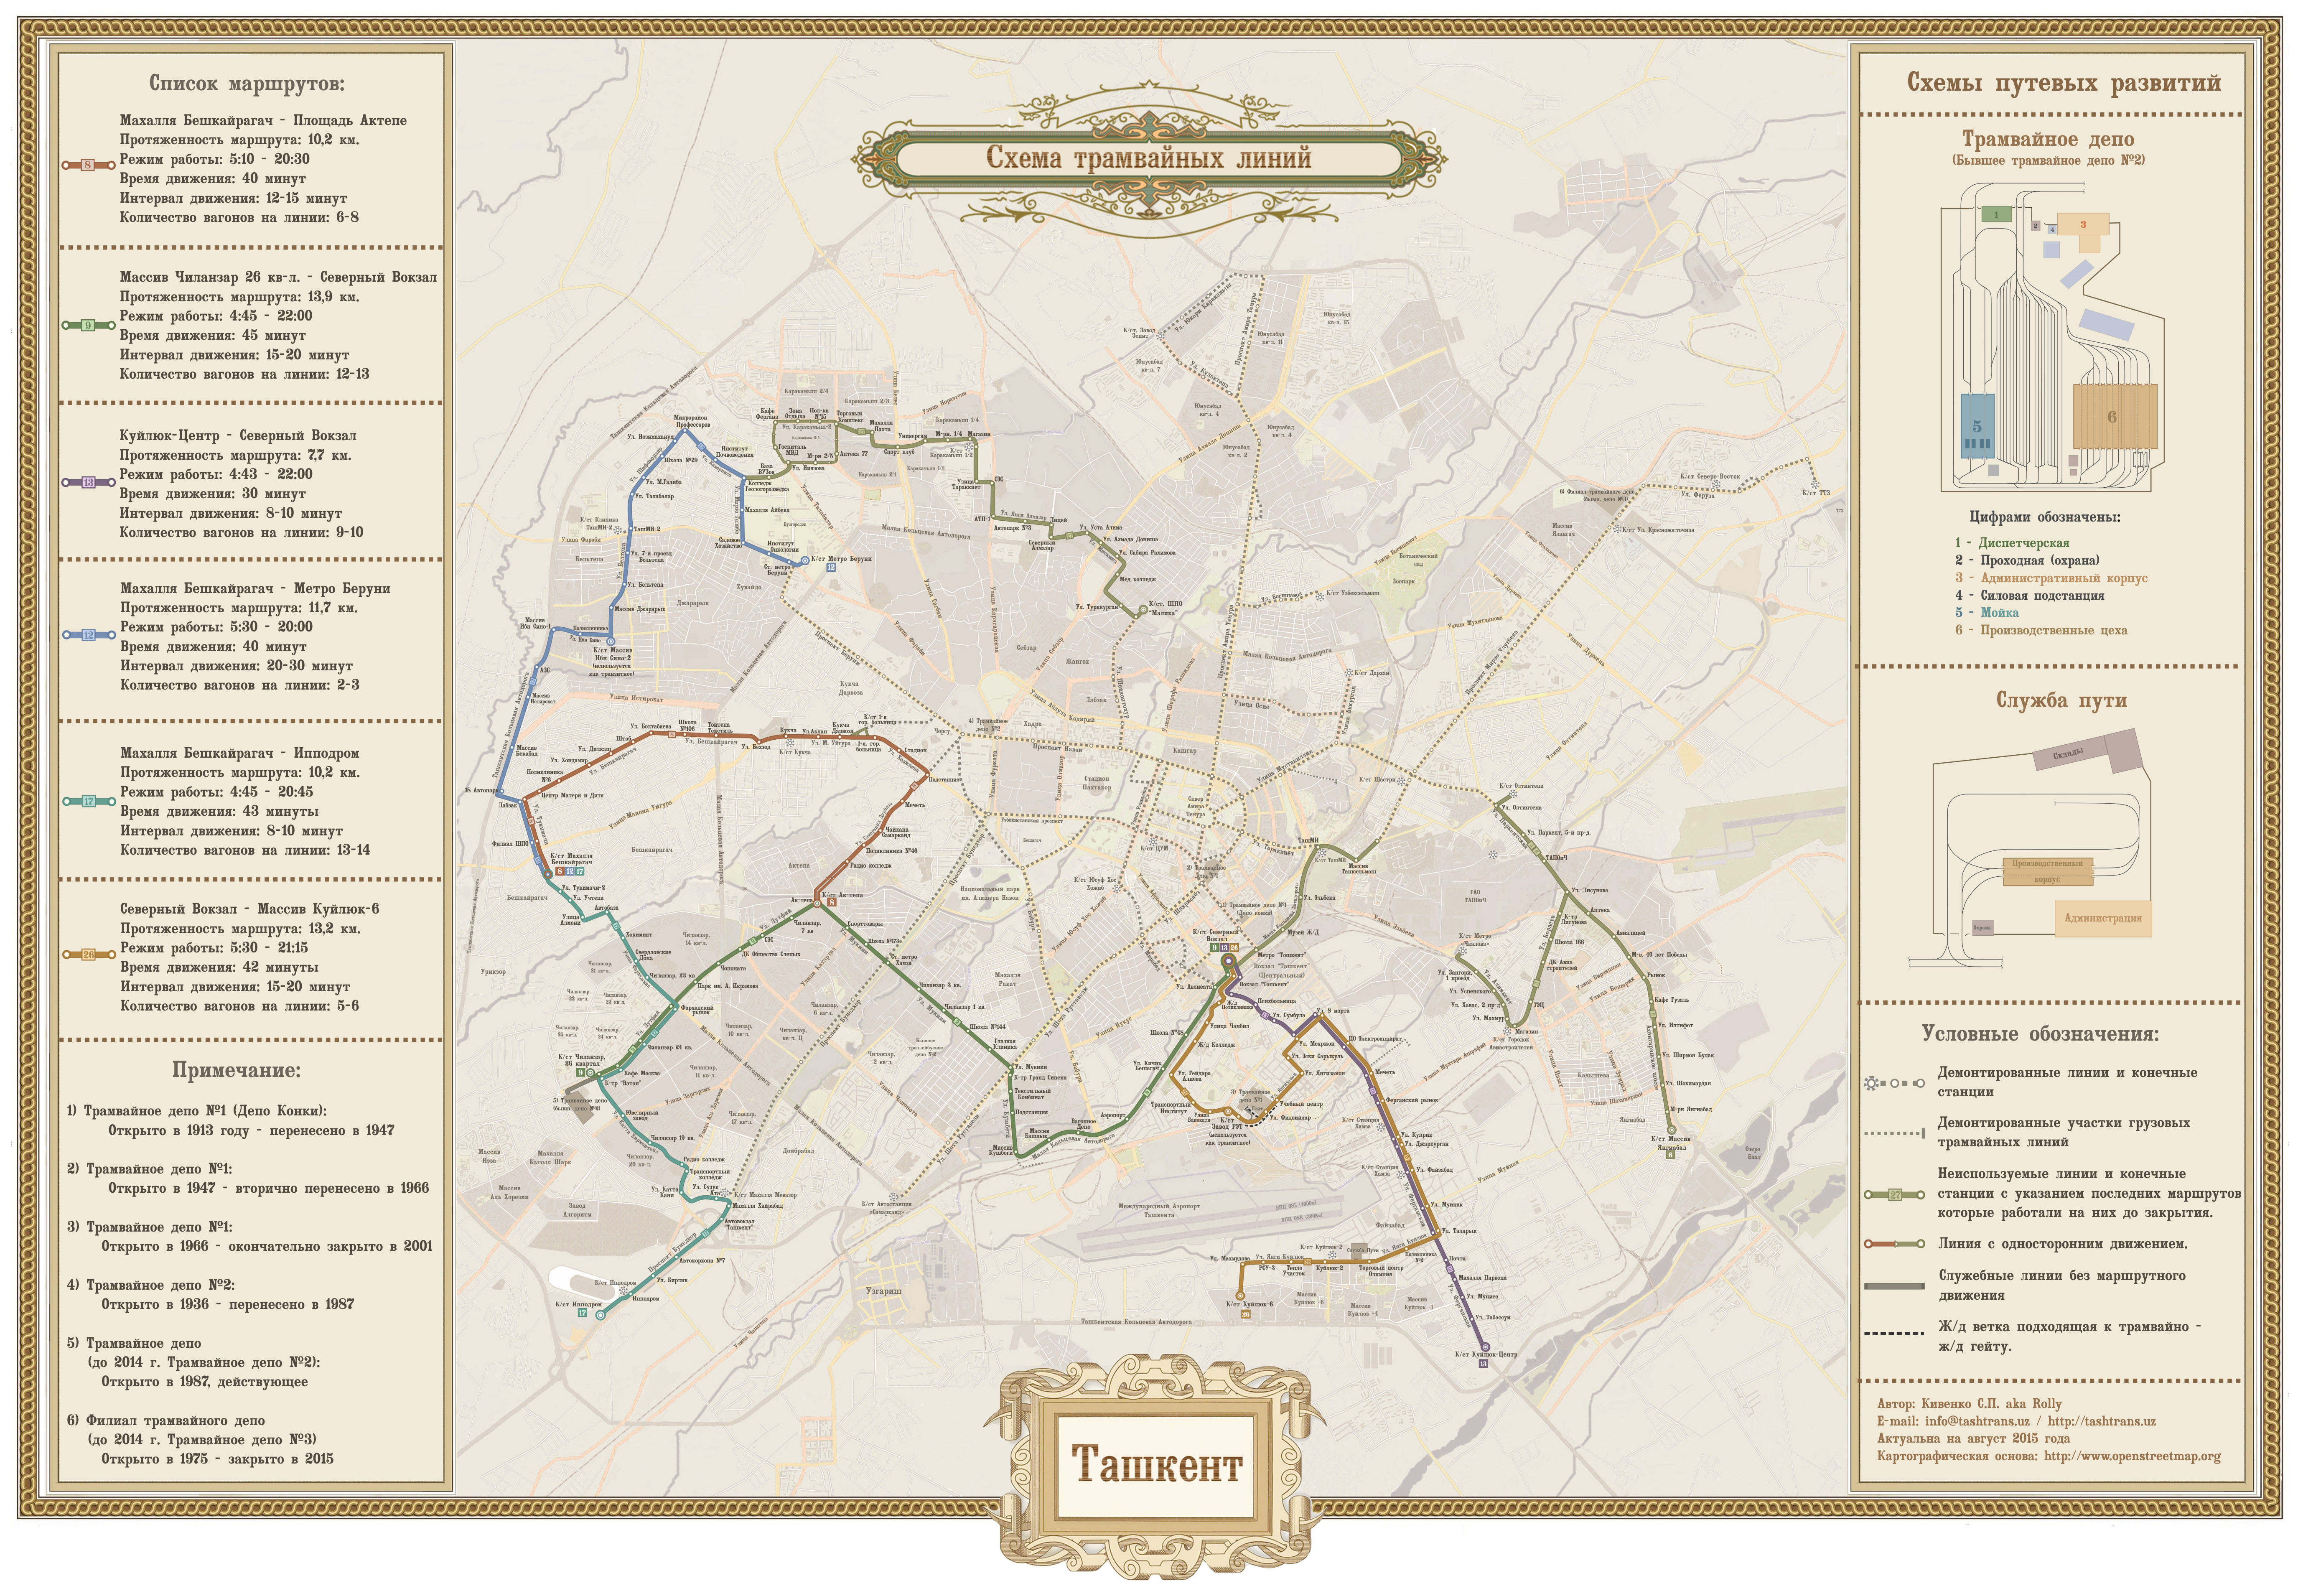 Tashkent — Maps